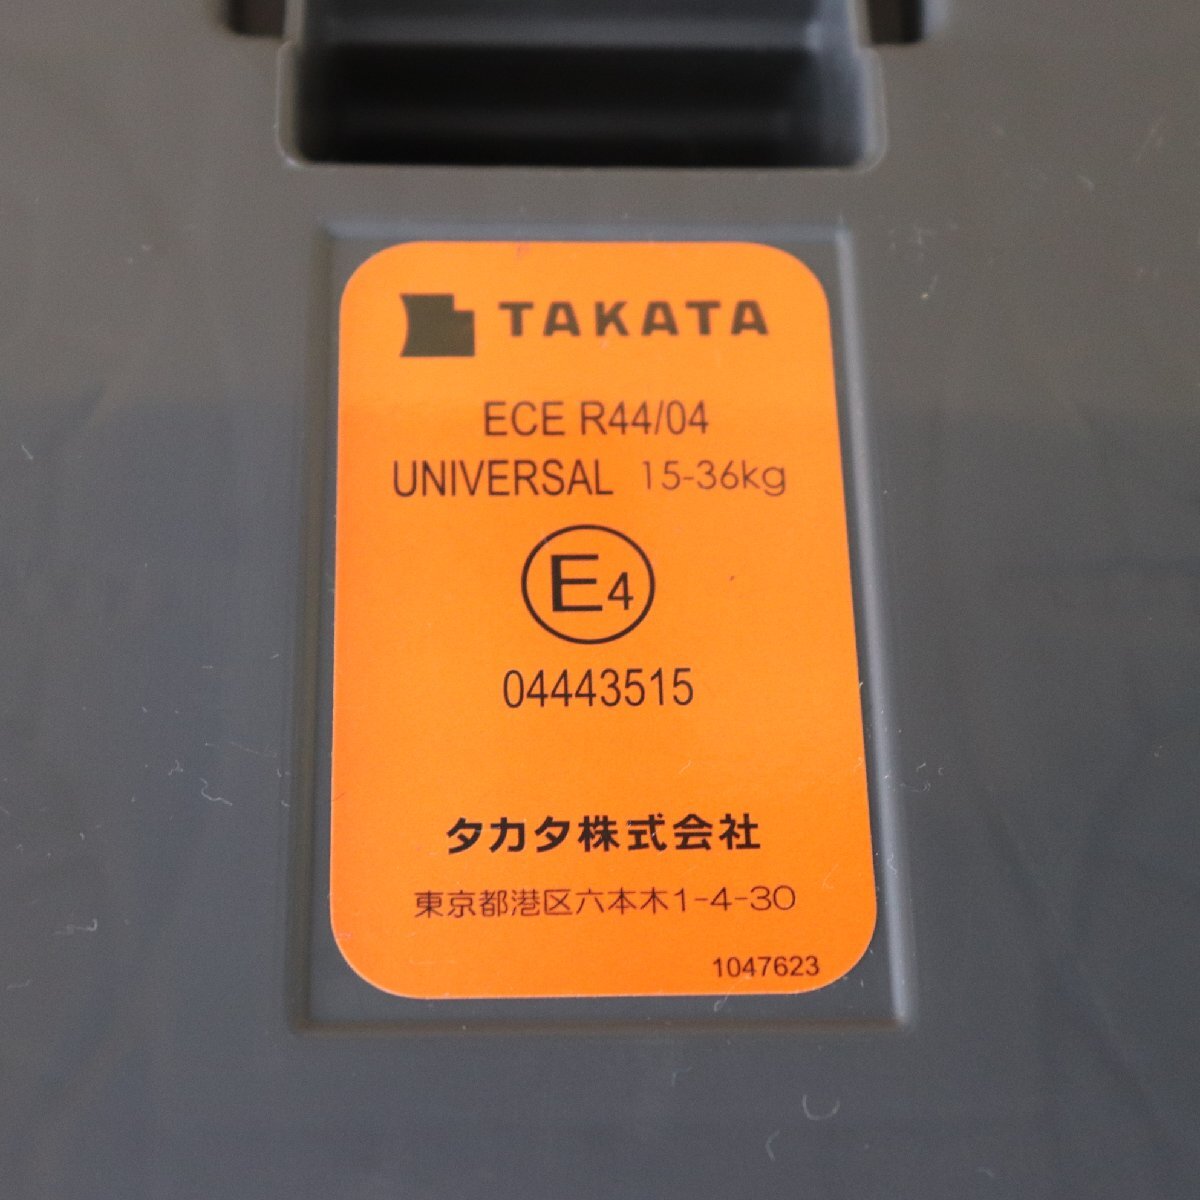  Toyota детское сиденье оригинальный товар Takata ECE R44/04 б/у товар 